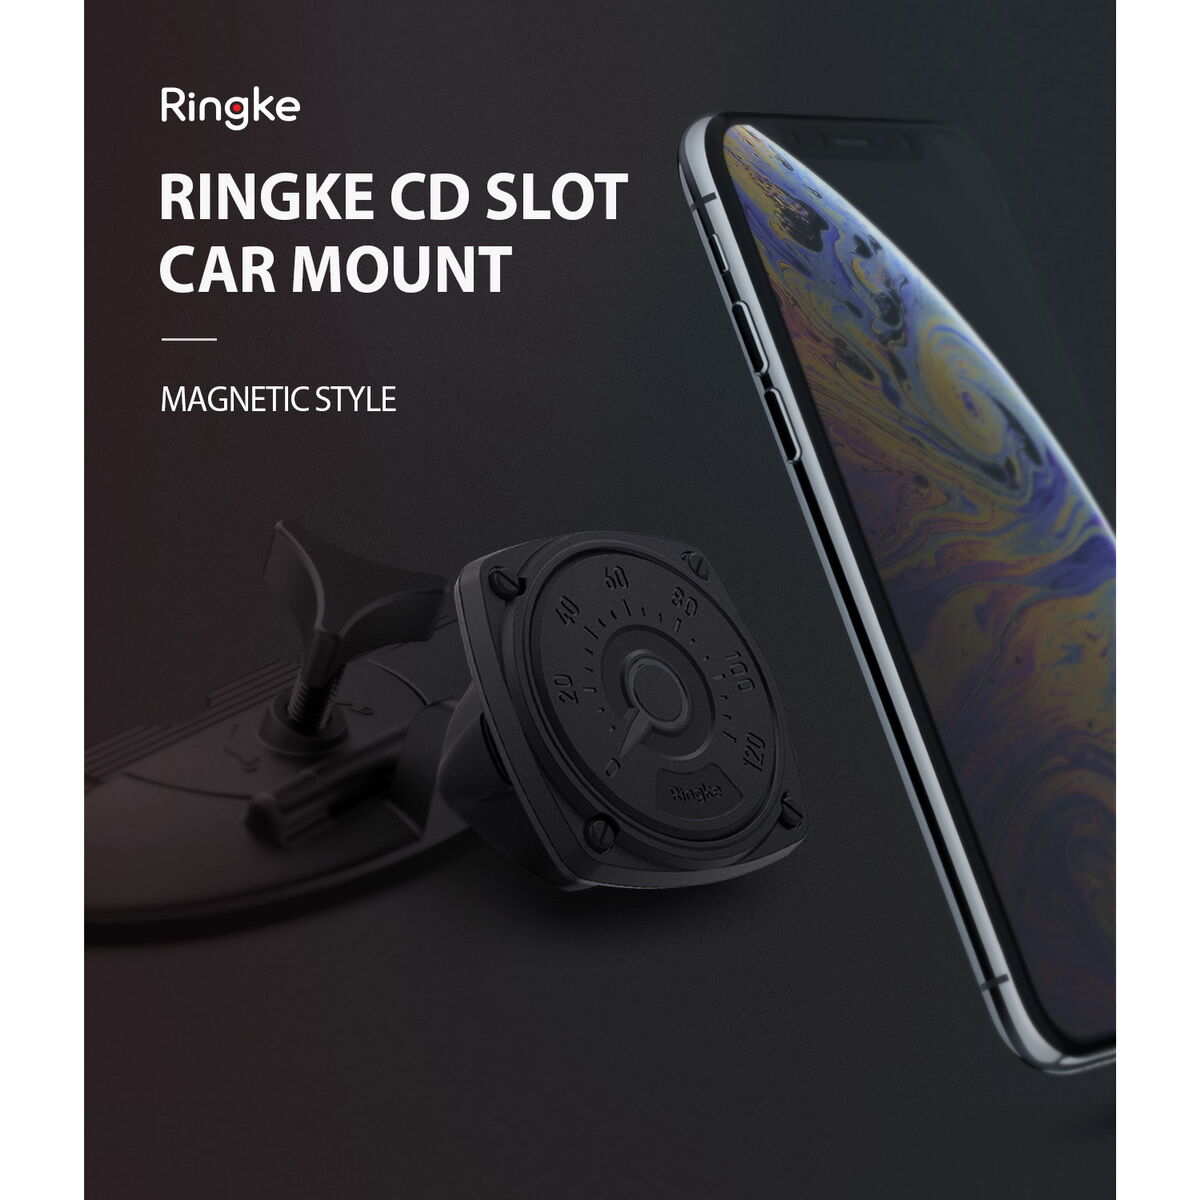 Ringke autós telefontartó, Square CD Slot, CD lejátszóba helyezhető, Fekete